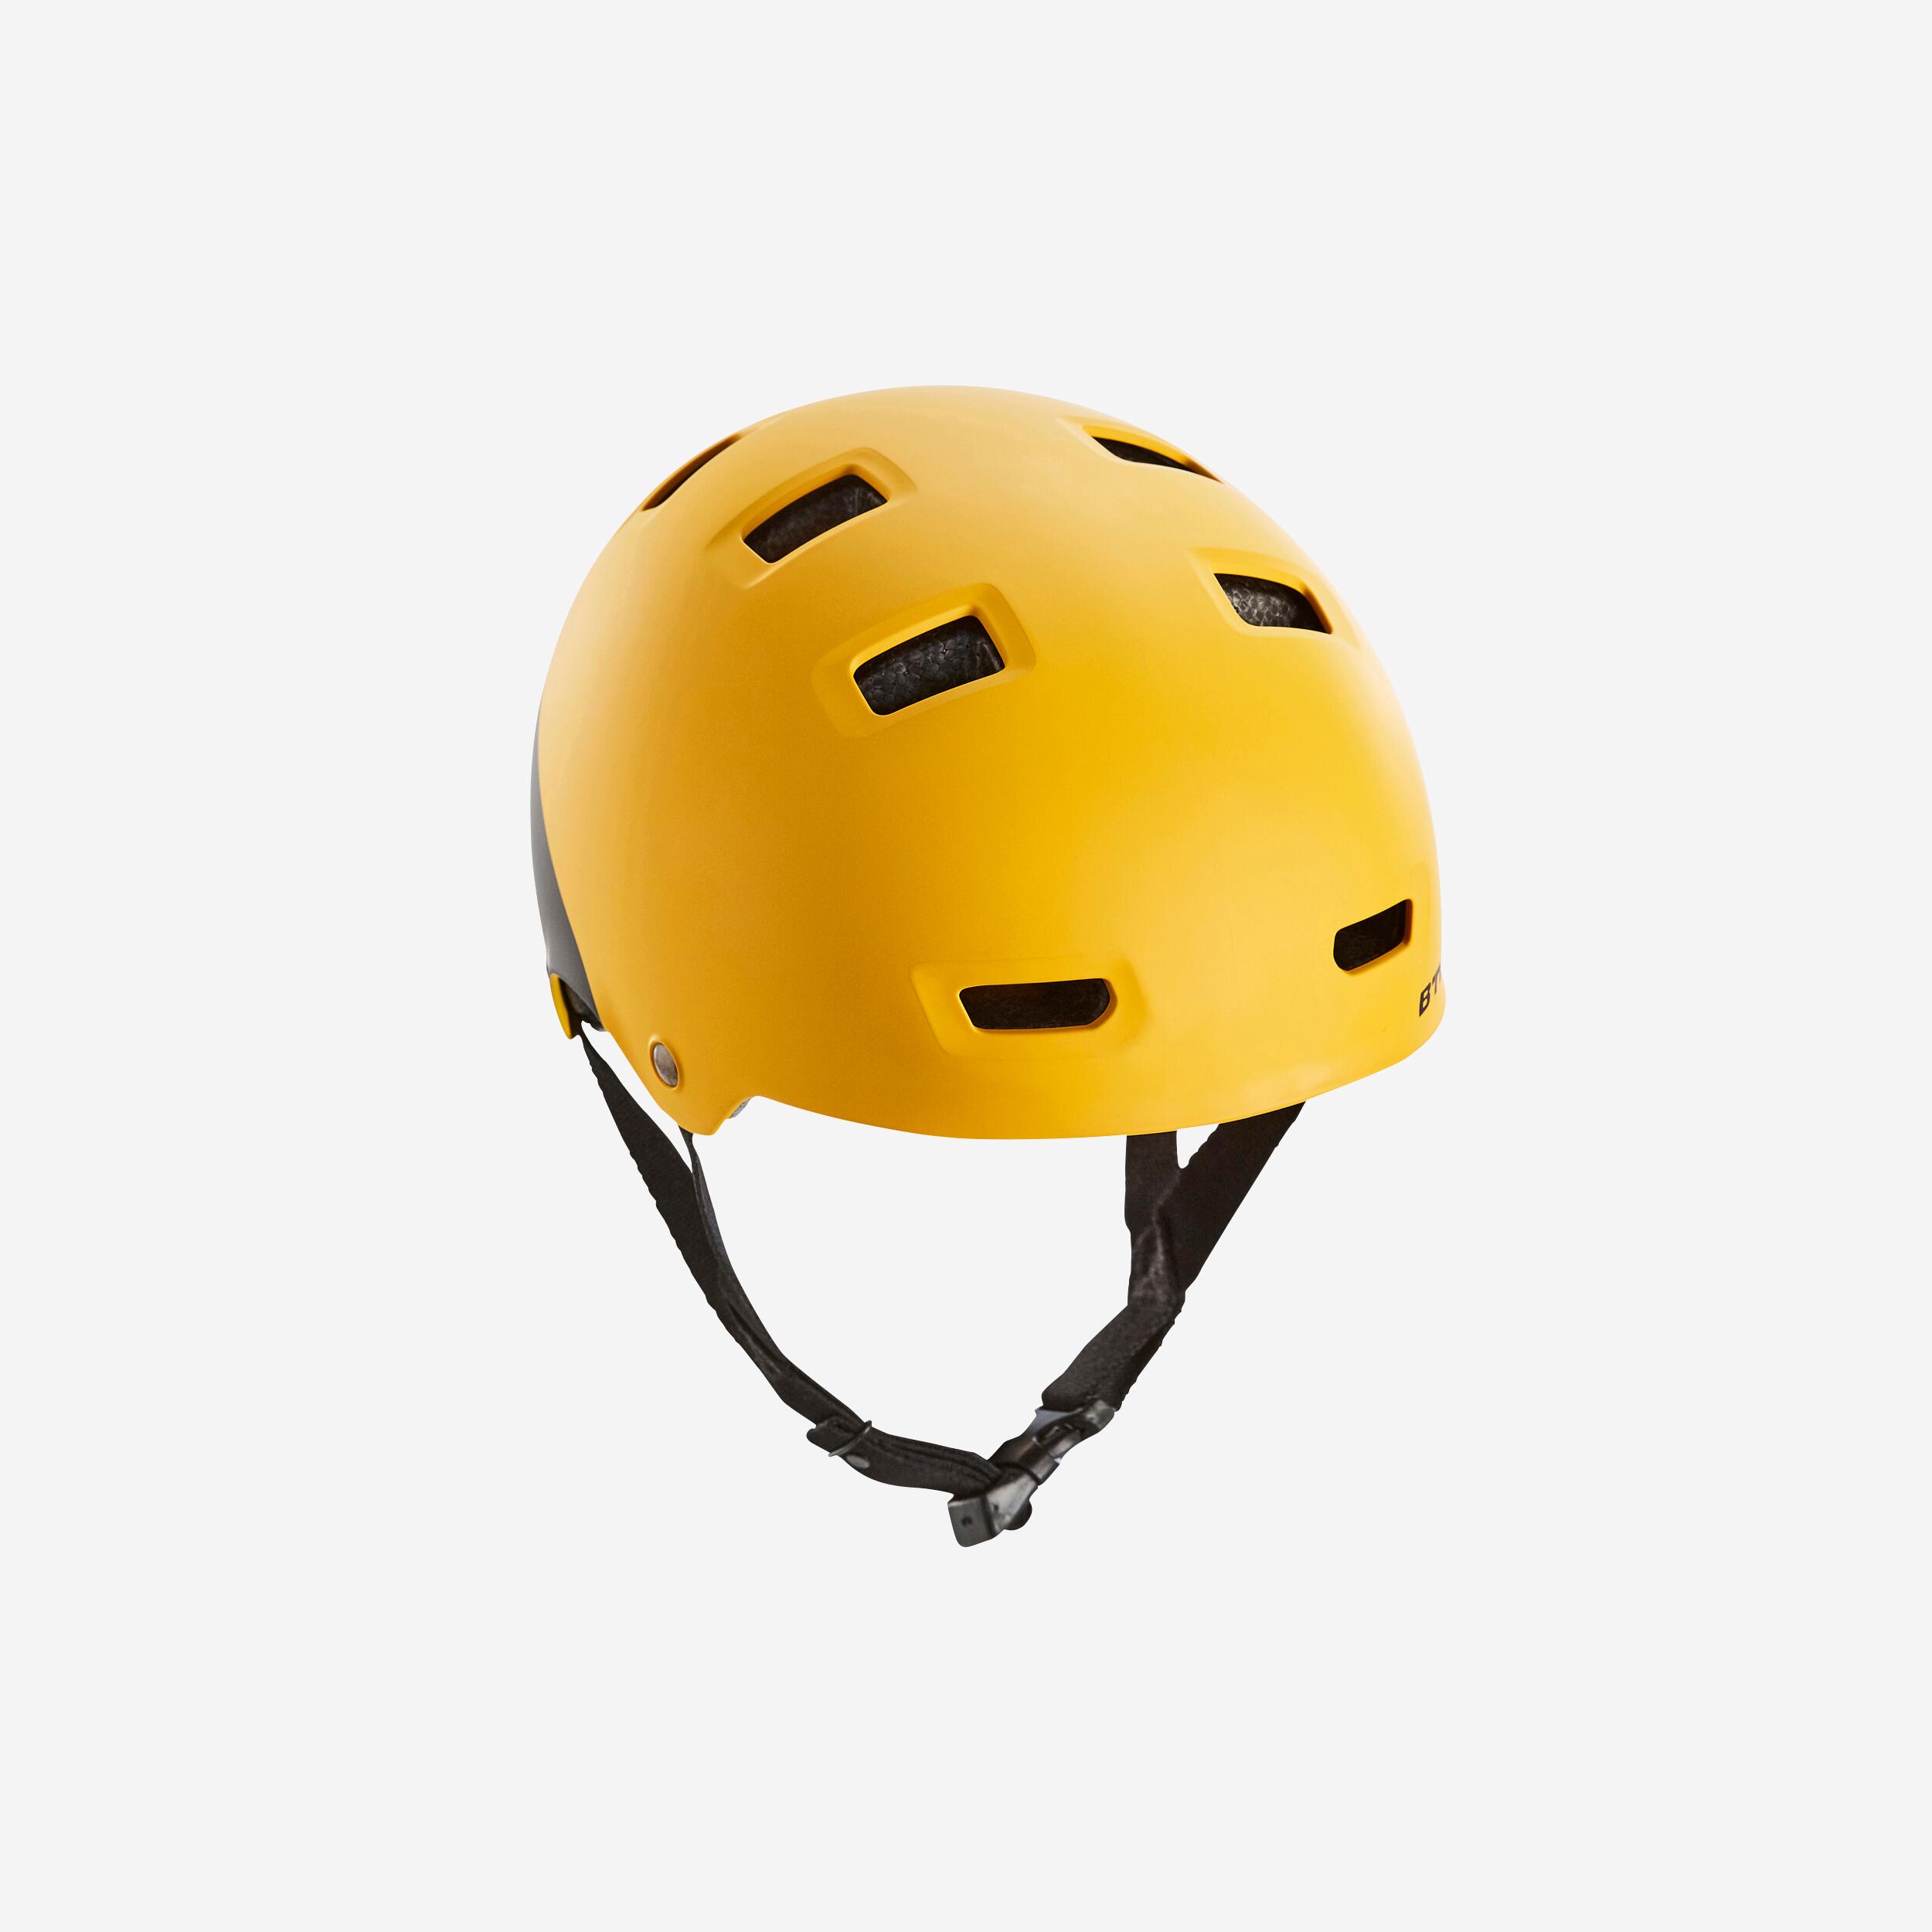 BTWIN Teen Bike Helmet 520 XS - Yellow